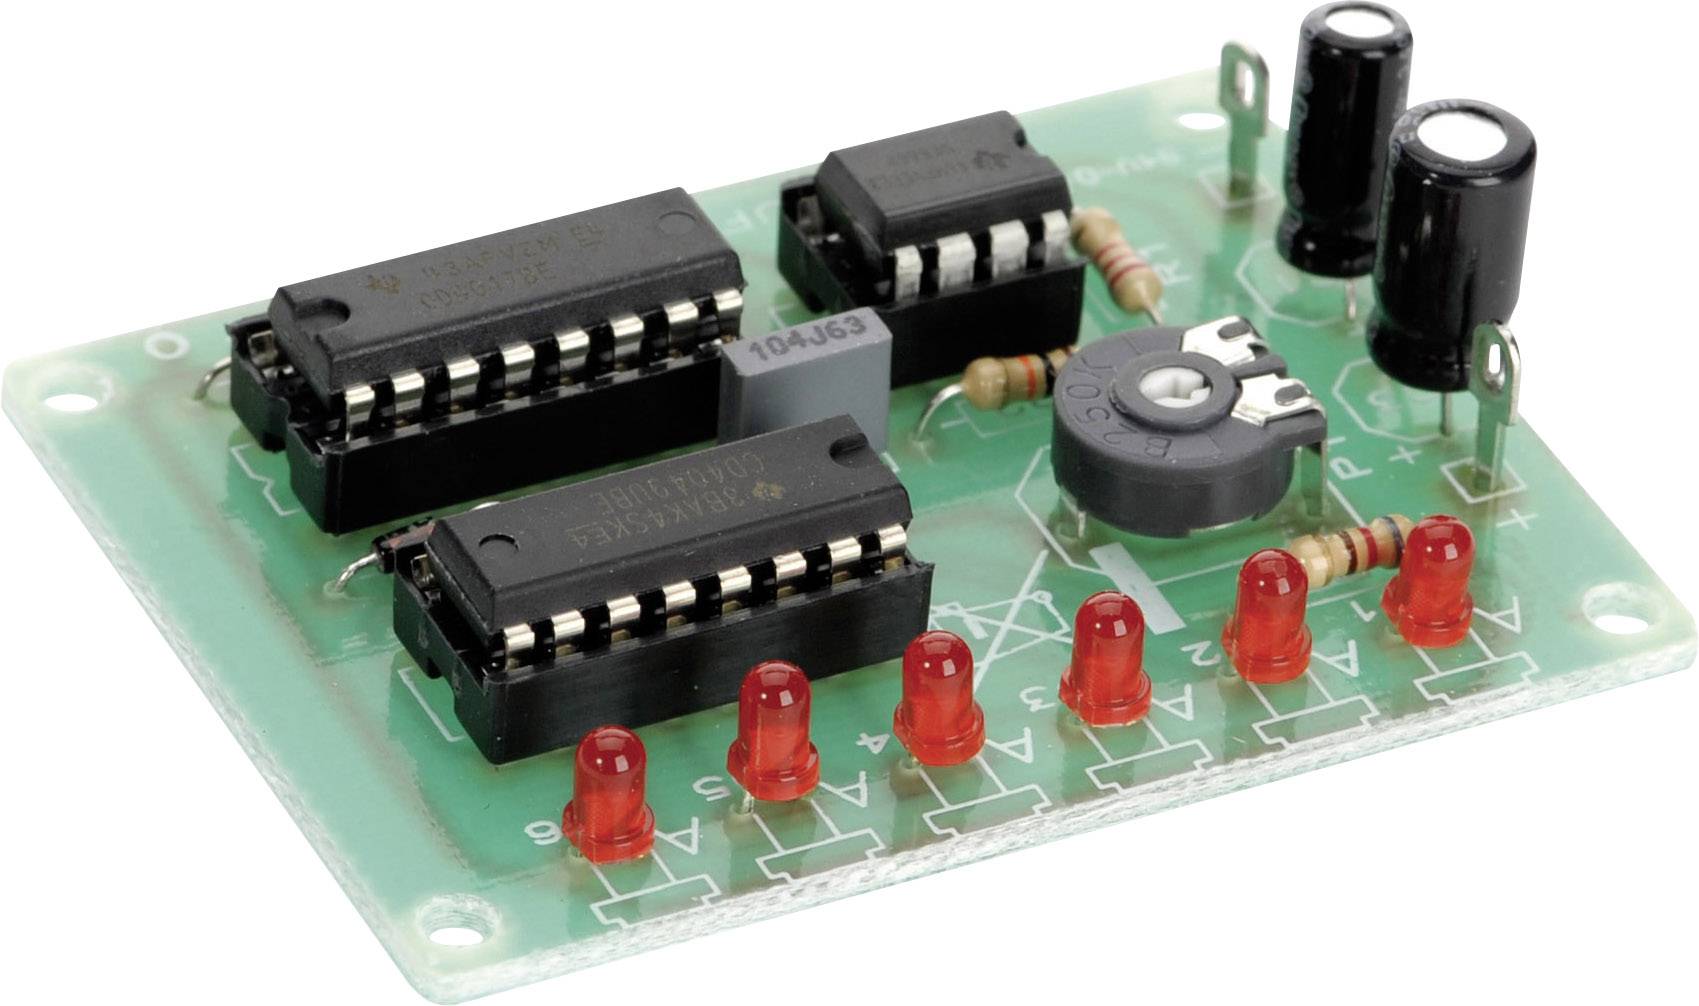 Lauflichtsteuerung LEDCONTROL mit Wahlschalter Lauflicht / Standlicht -  Krause Modellbau